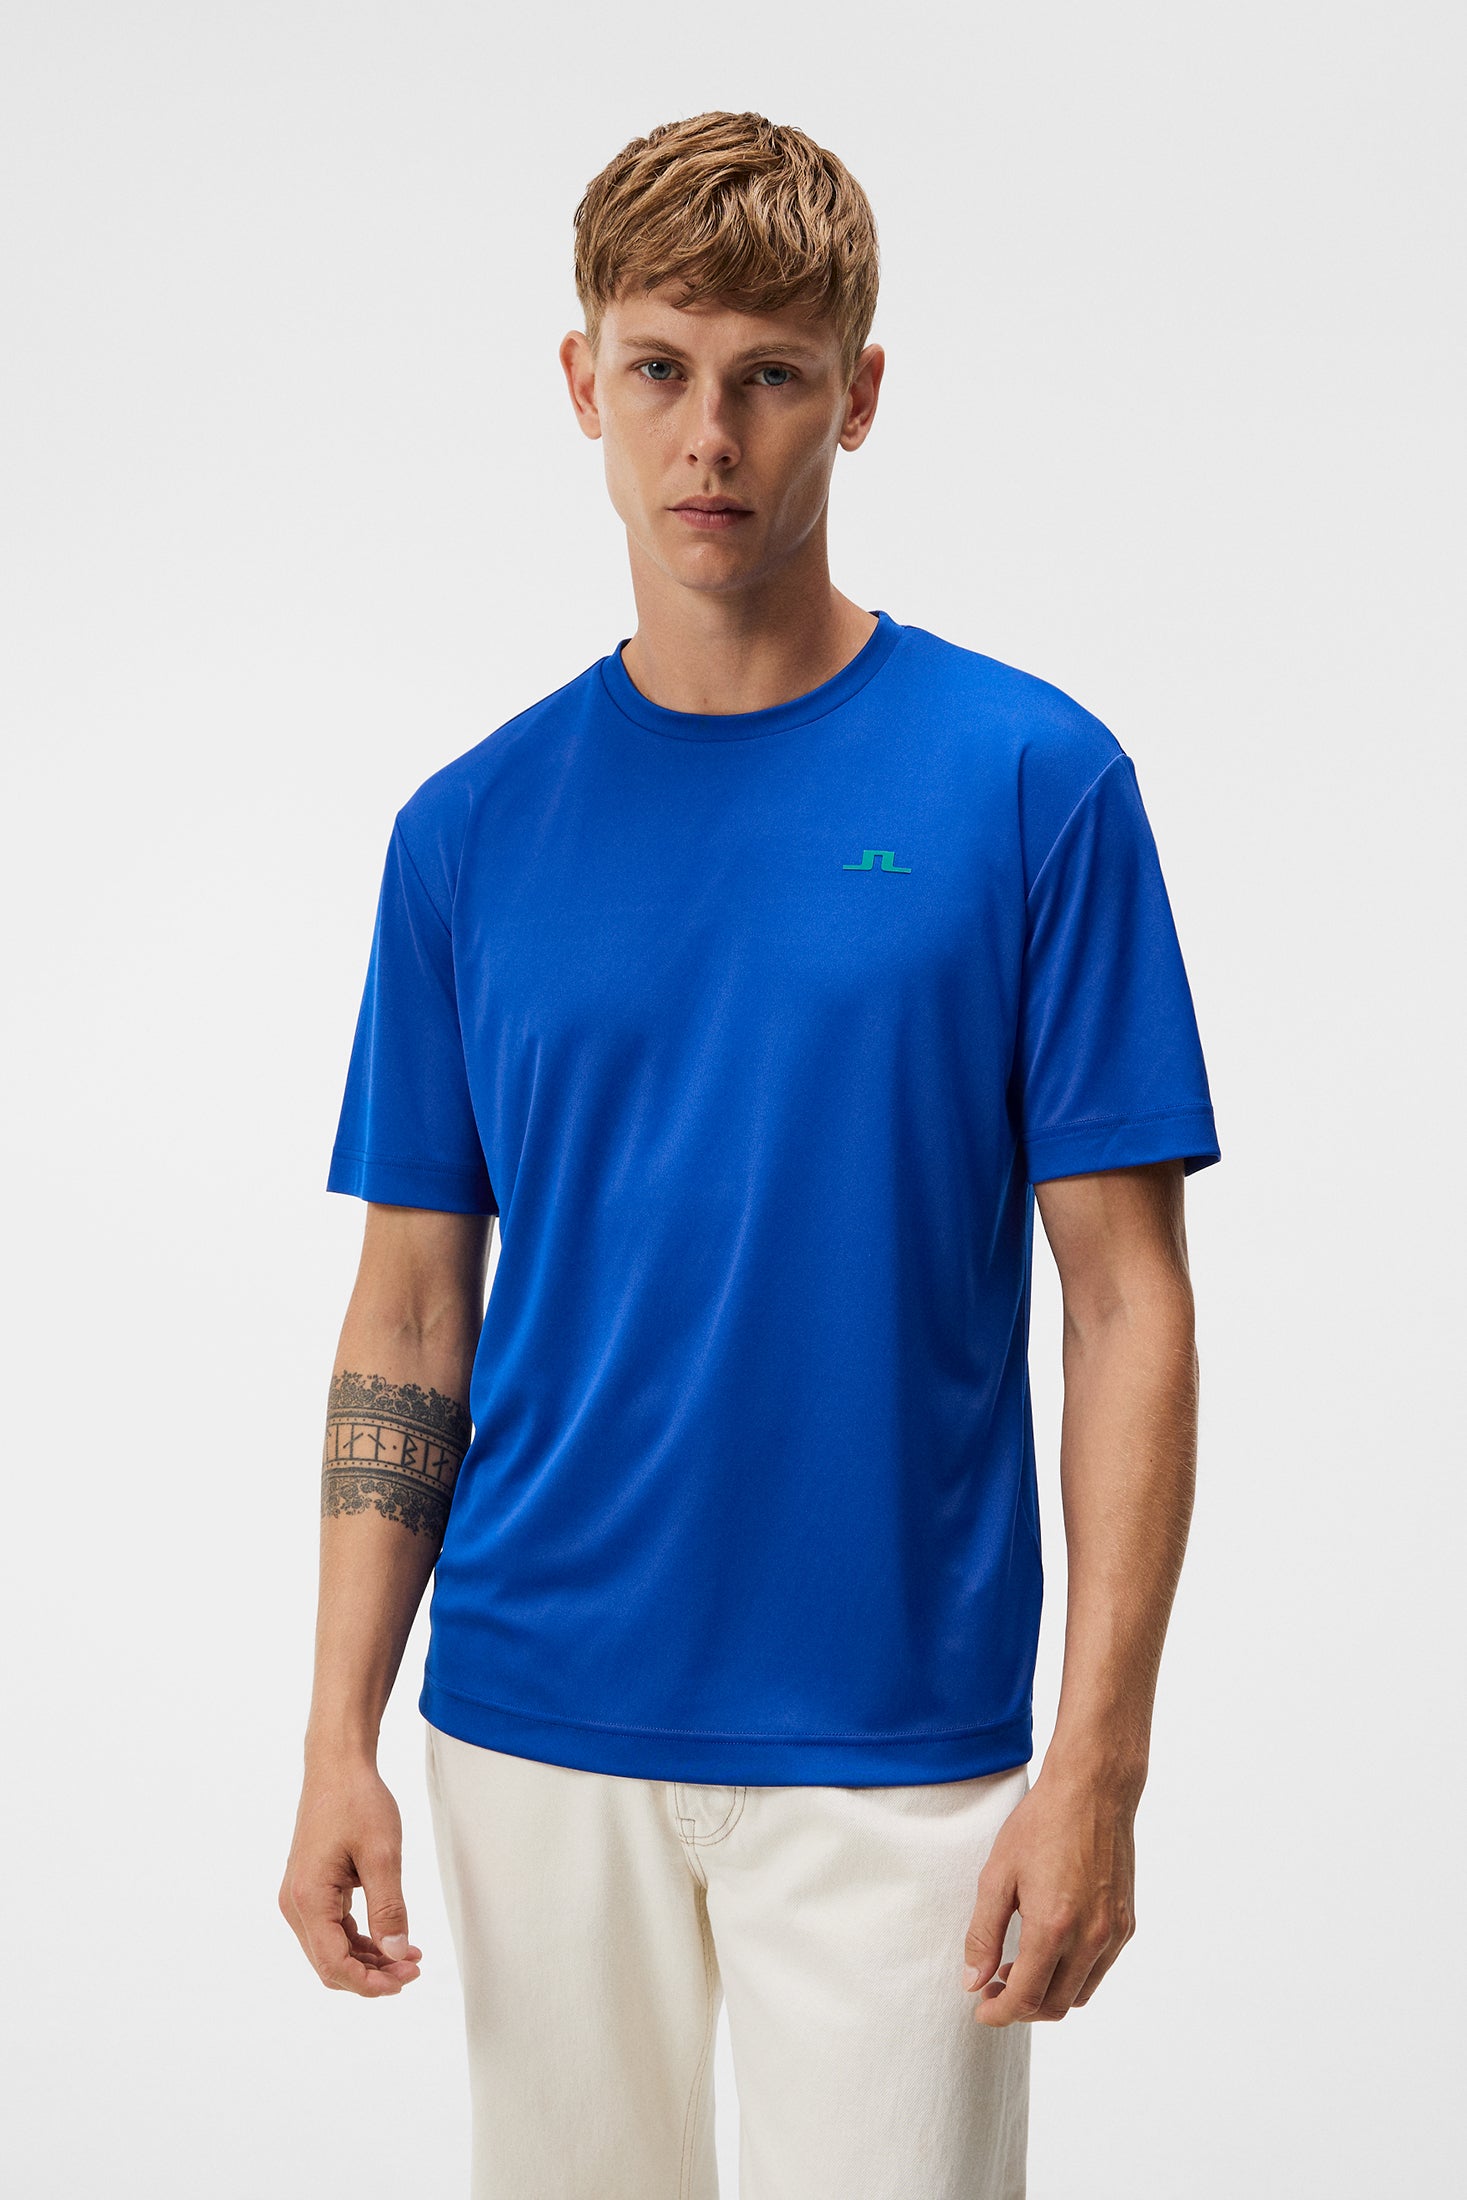 Trendy T-shirts for Men - J.Lindeberg